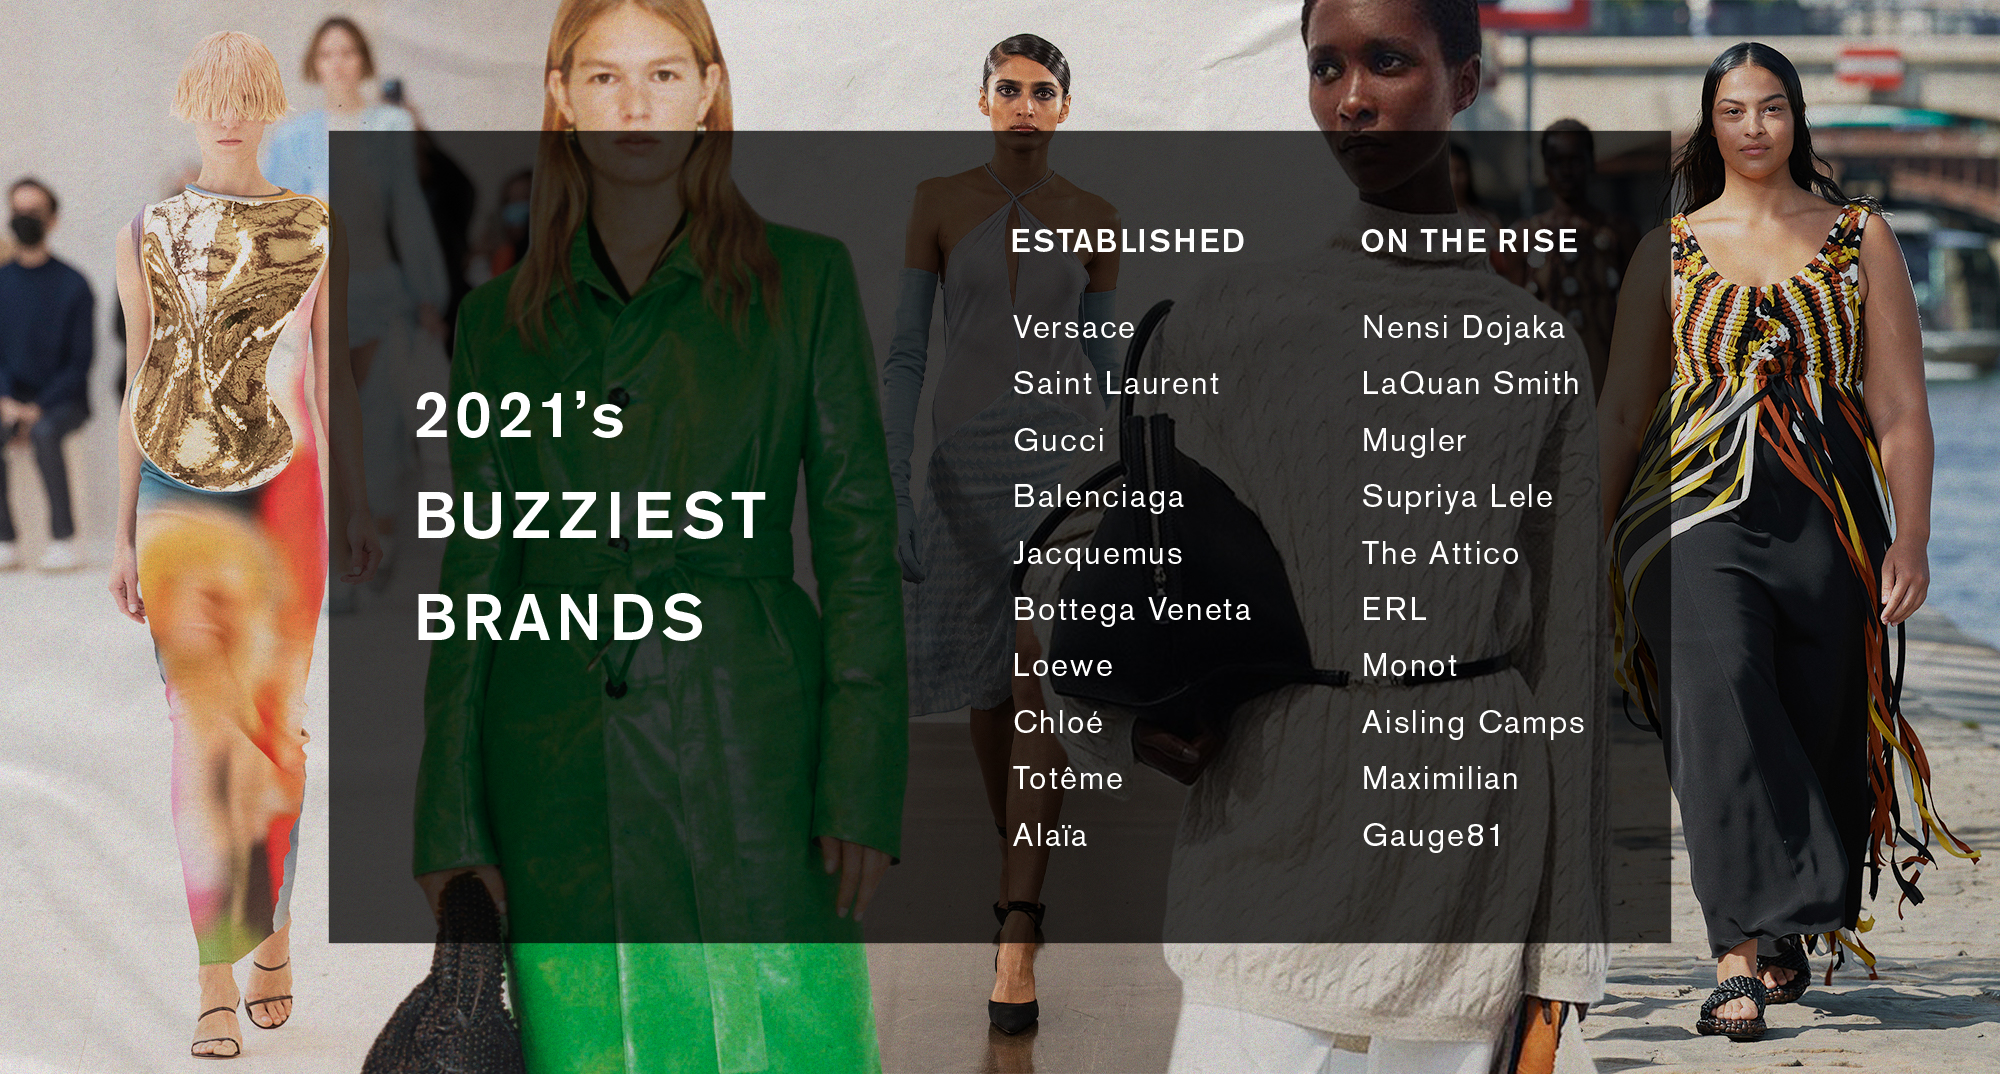 2021's buzziest luxury brands